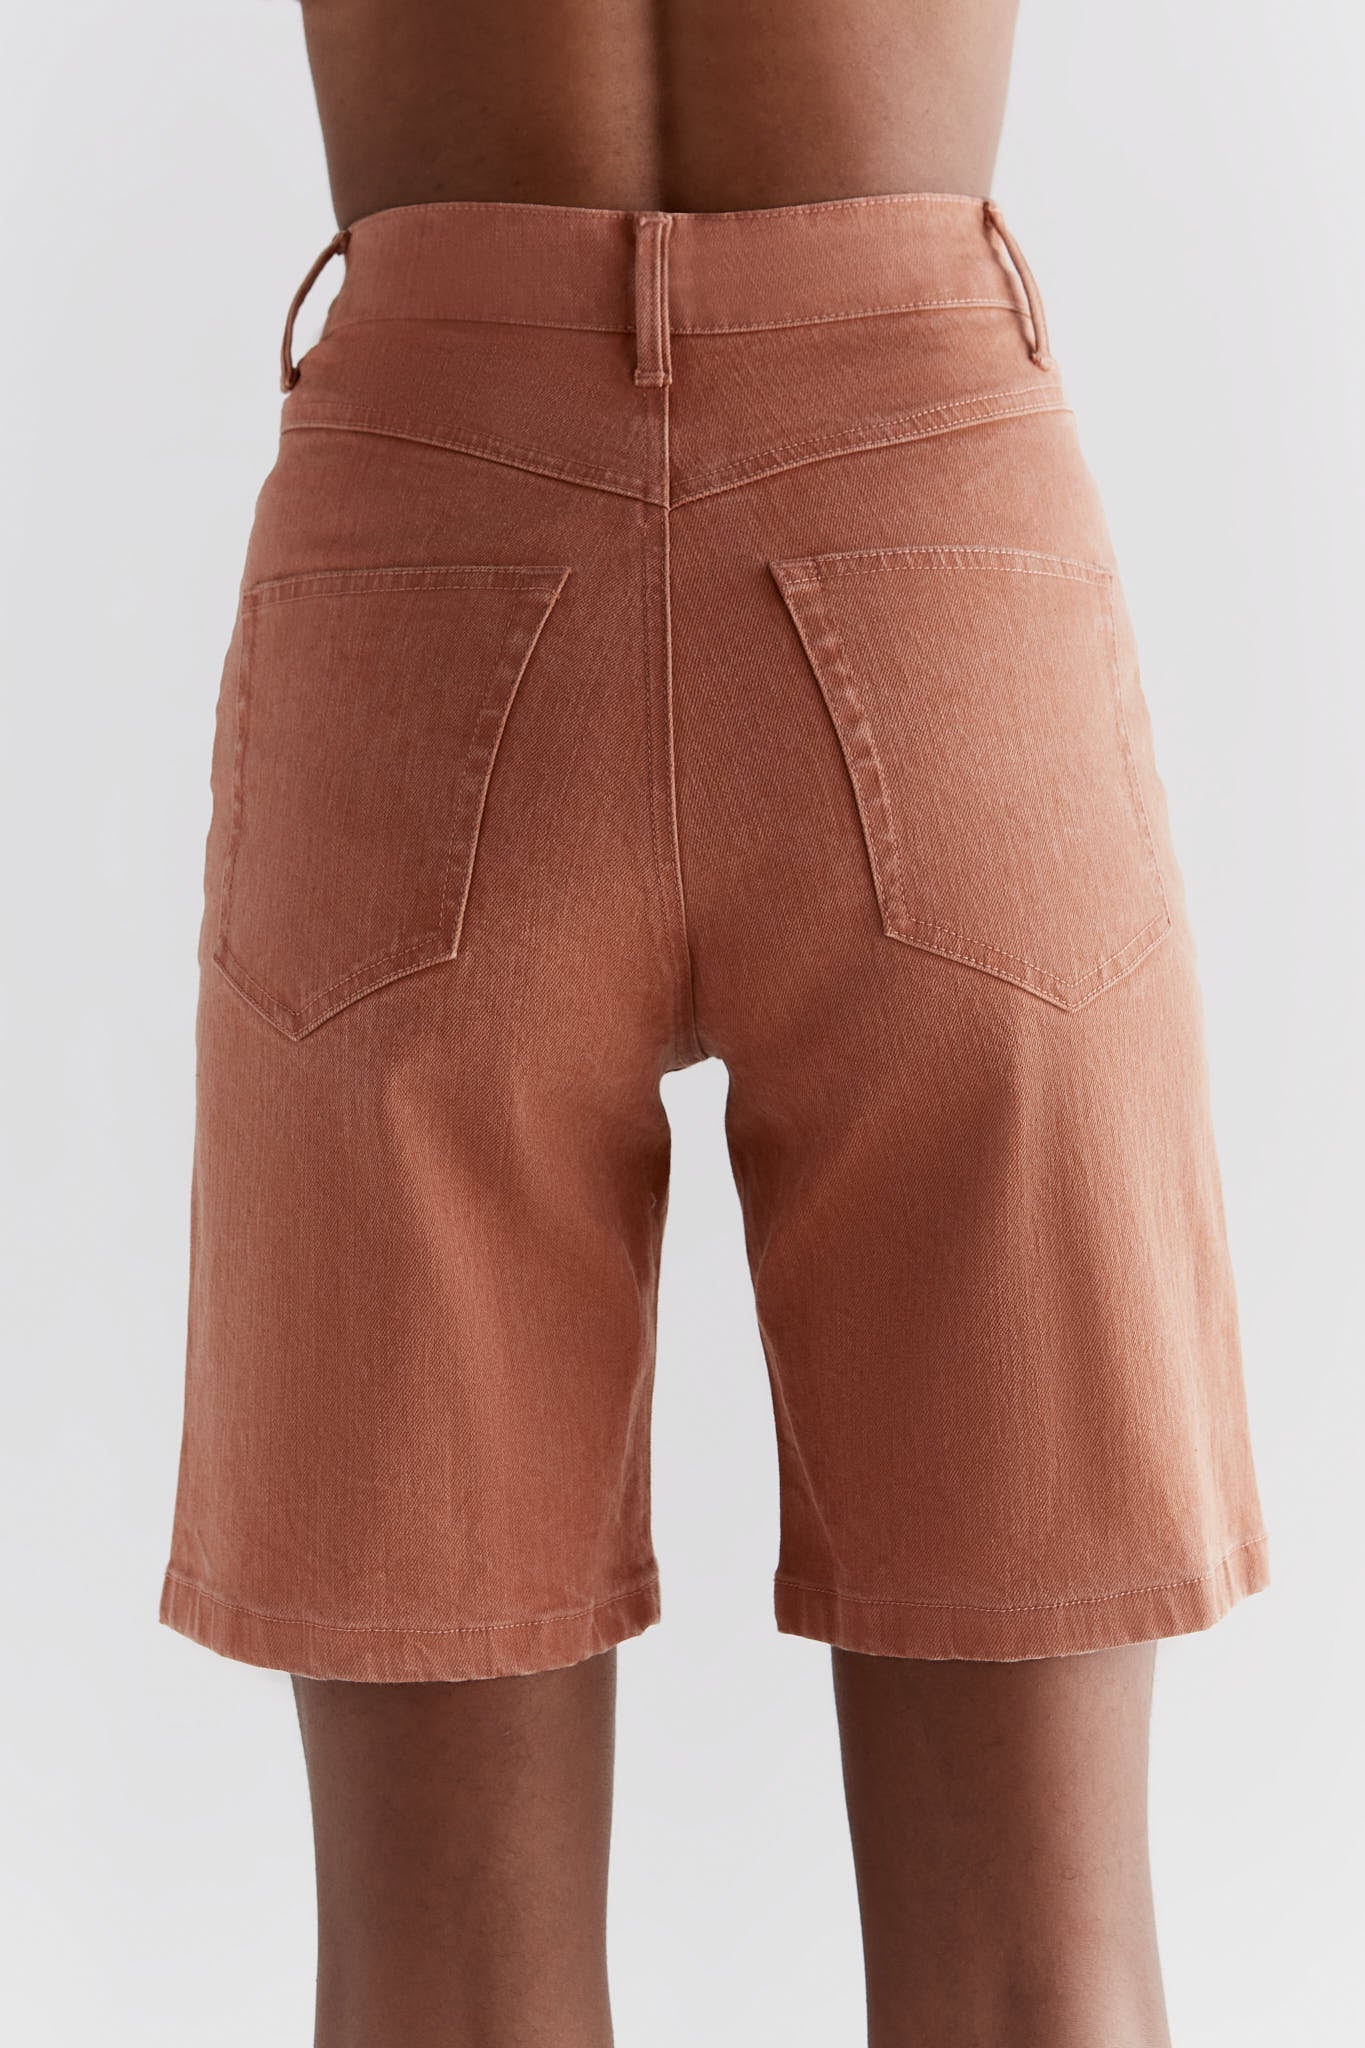 WA3018-514 | Damen Denim Shorts in Ton Waschung - Sunburn